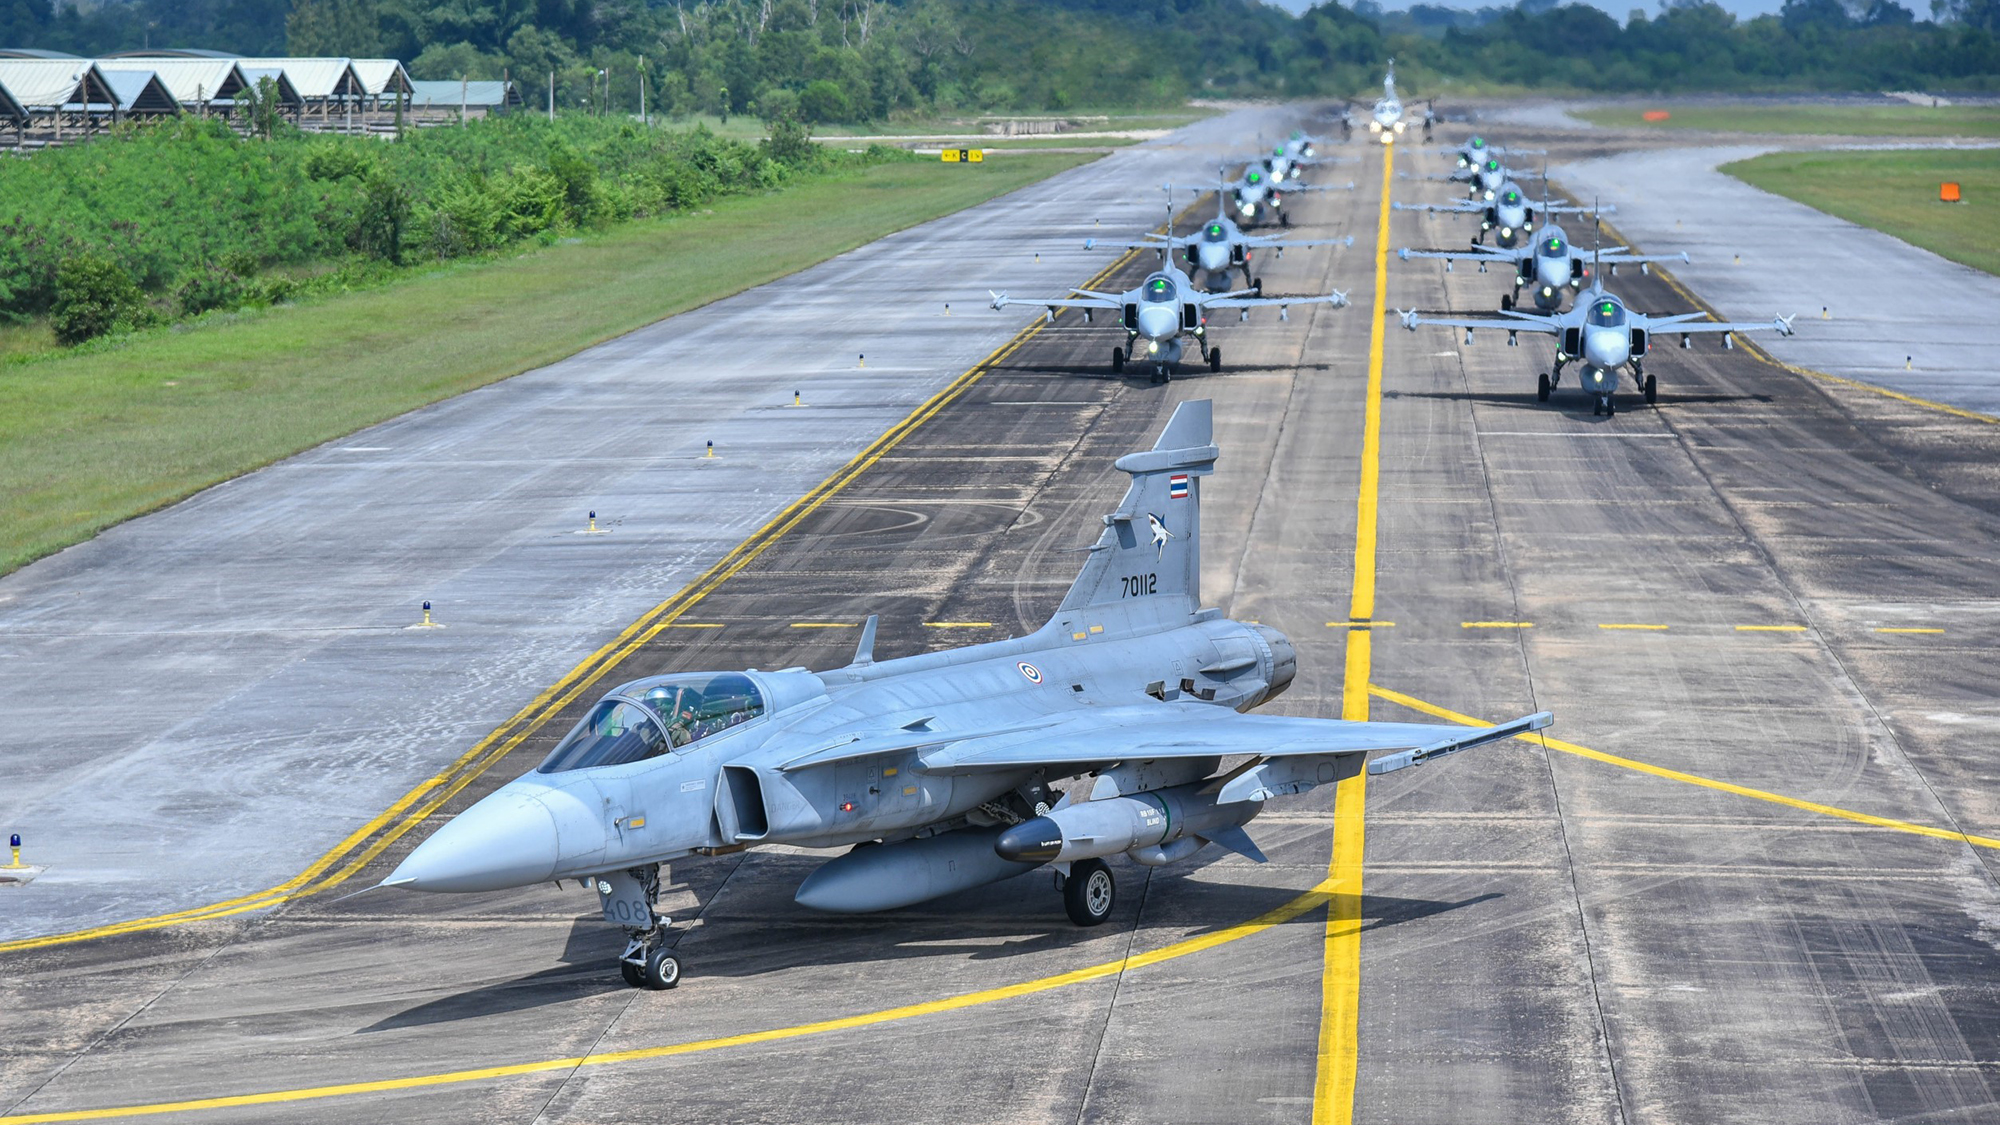 Med en formationsflygning visade det thailändska flygvapnet sin uppskattning för hur supporten till Gripensystemet i Thailand fungerar.